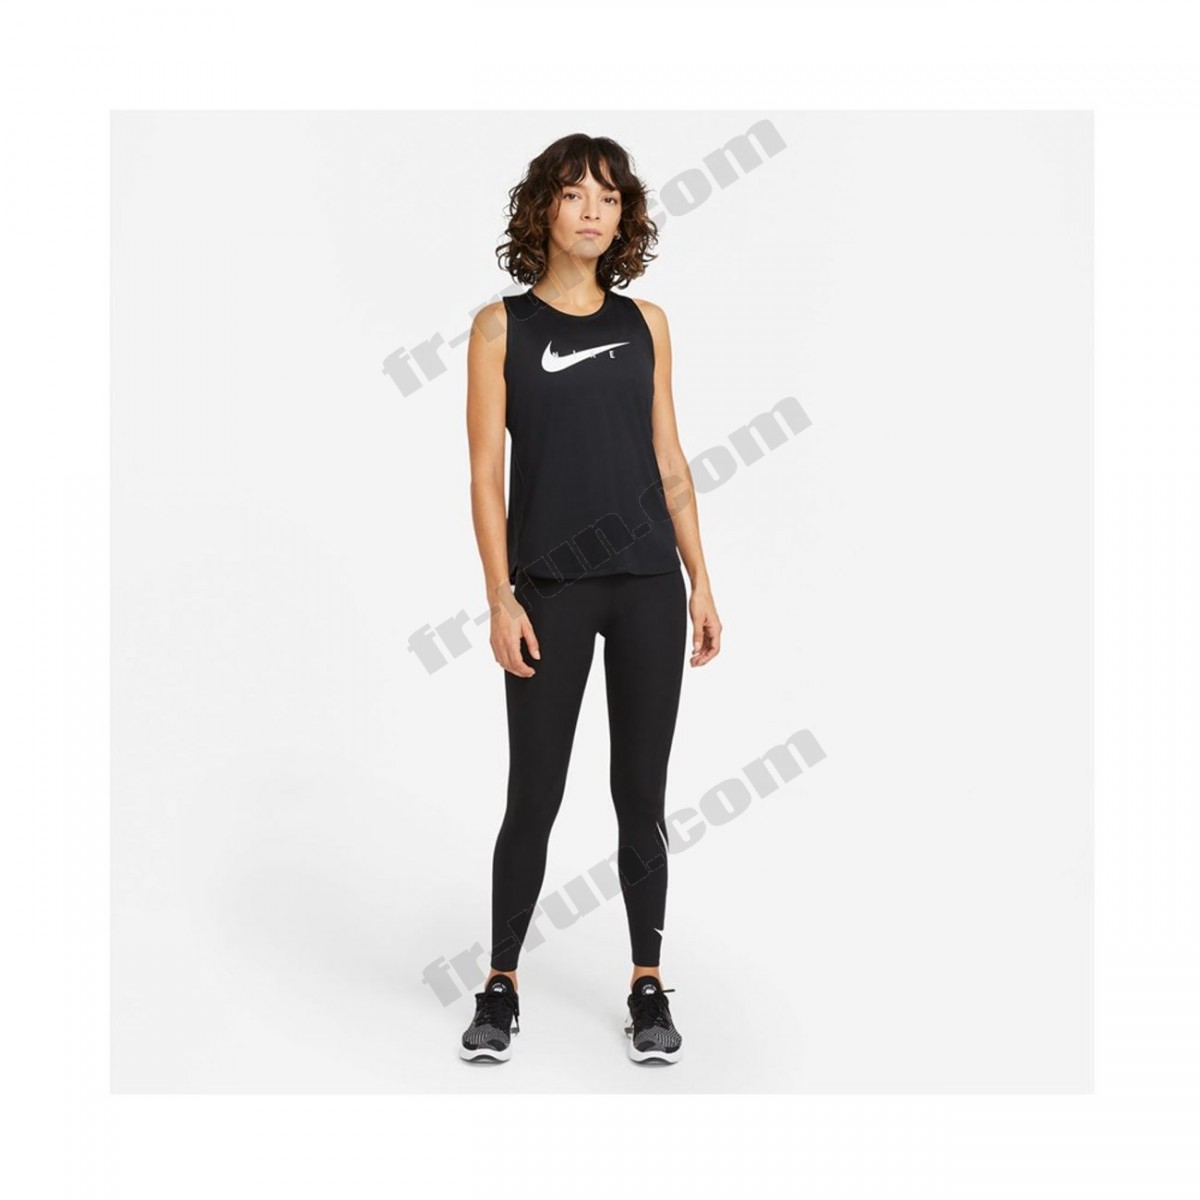 Nike/running femme NIKE Nike Wmns Swoosh Run Top ◇◇◇ Pas Cher Du Tout - -3